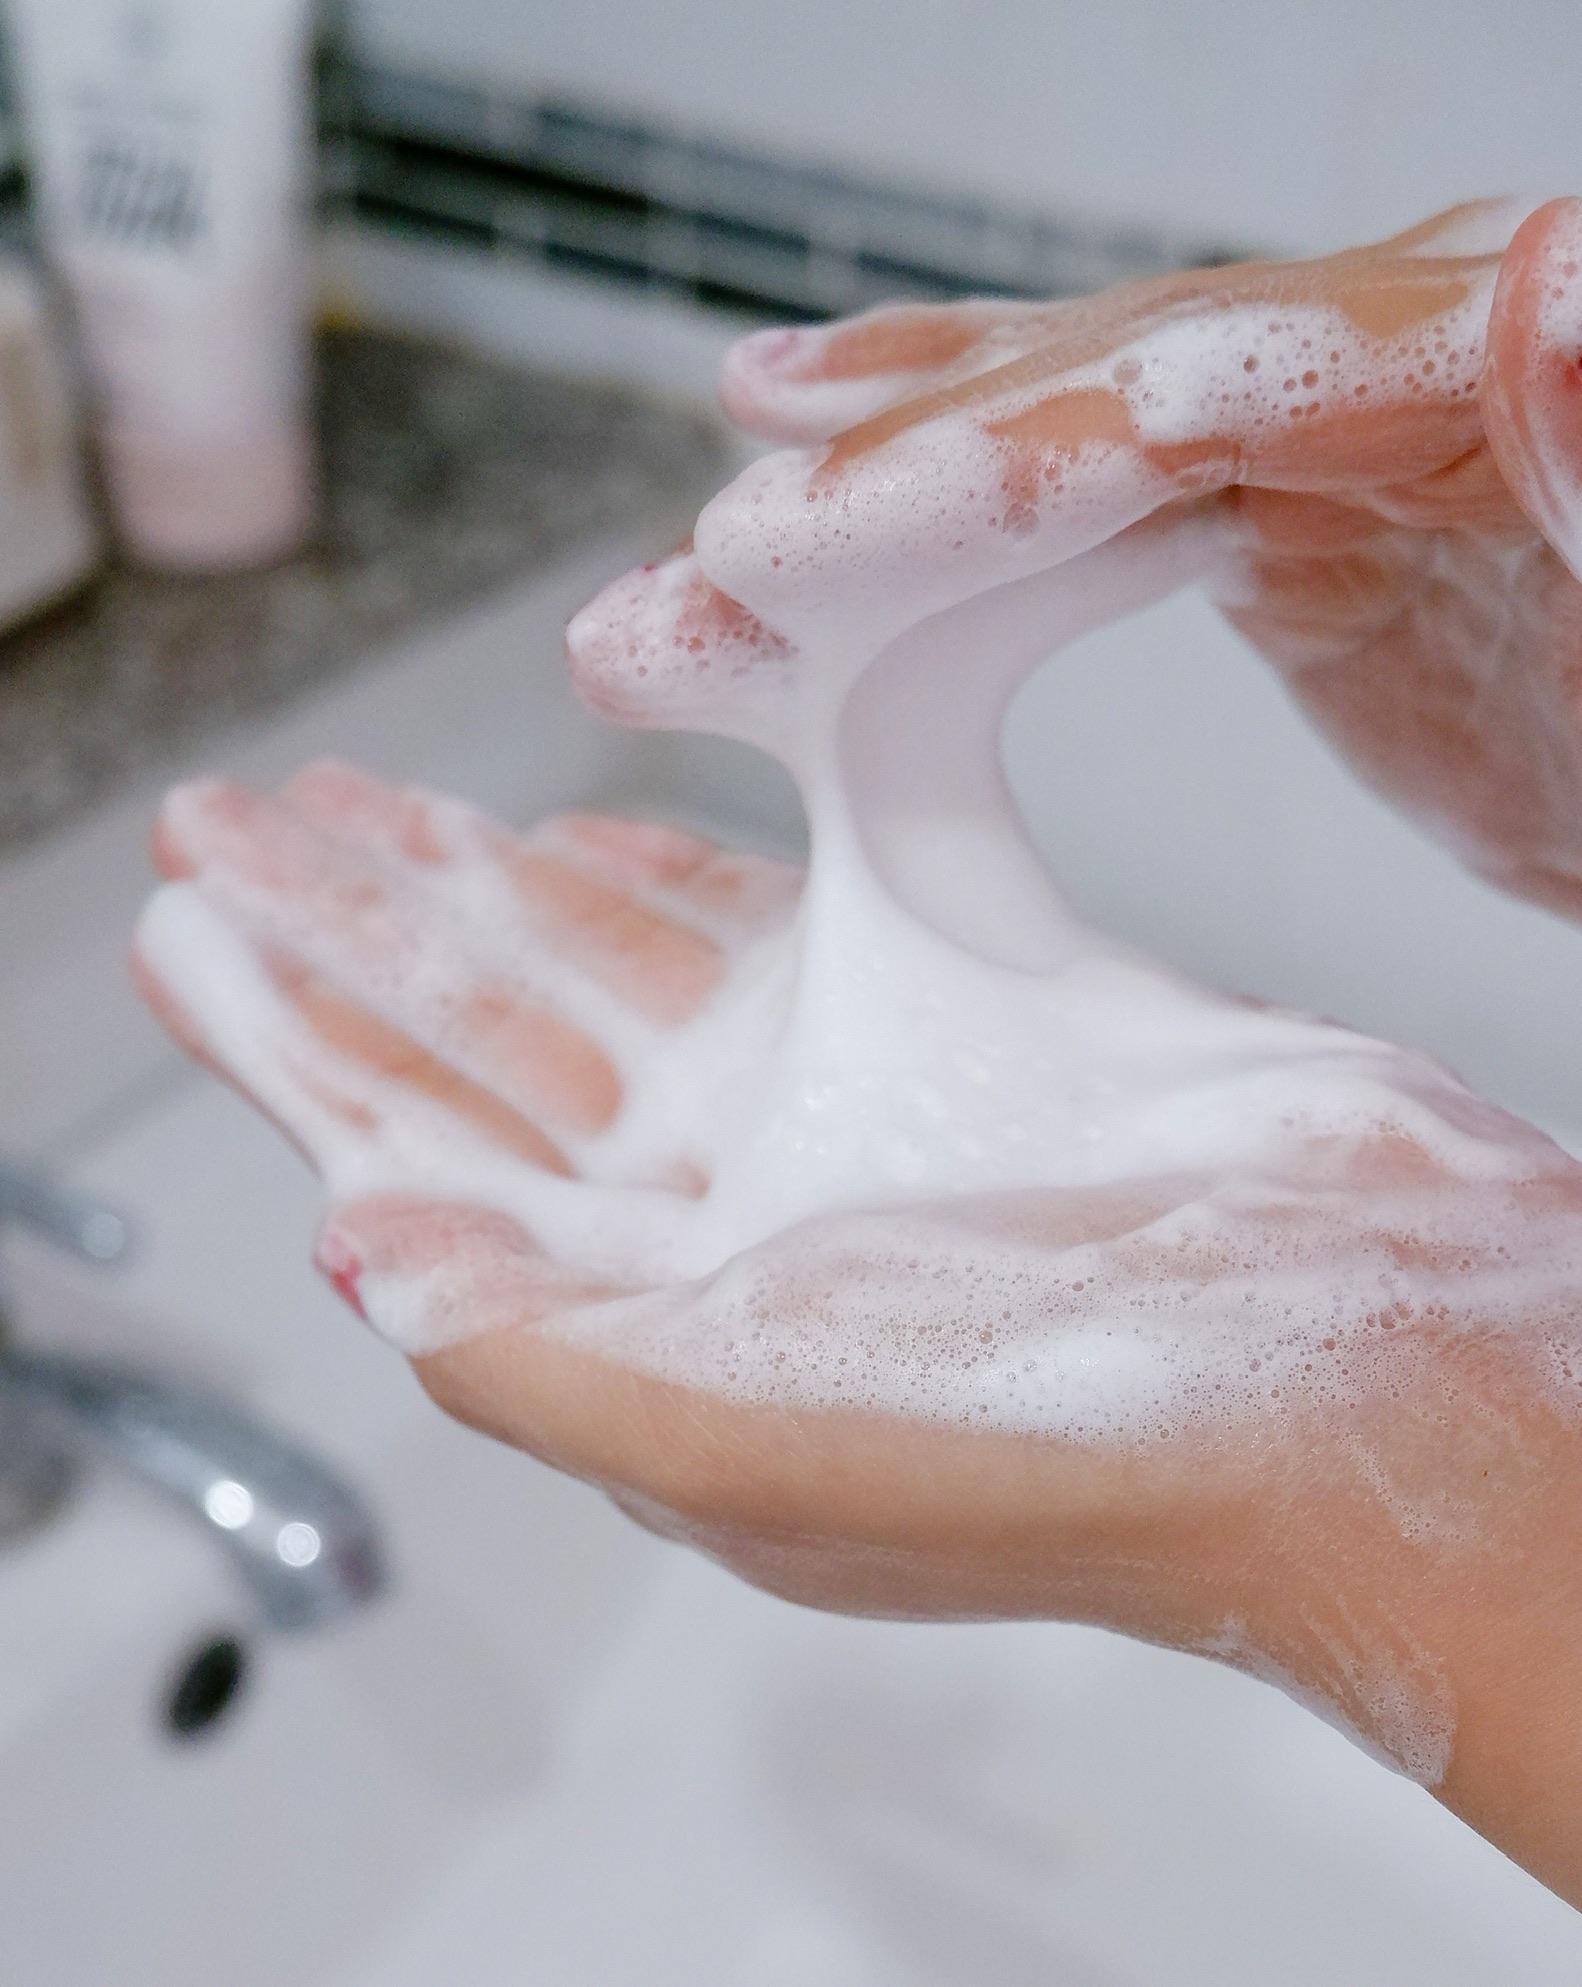 ภาพหน้าปก อาบน้ำนมให้ผิวหน้า ด้วยโฟมล้างหน้าตัวใหม่จาก Beauty buffet กันเถอะ ! 🌈💦💖❤️ ที่:1